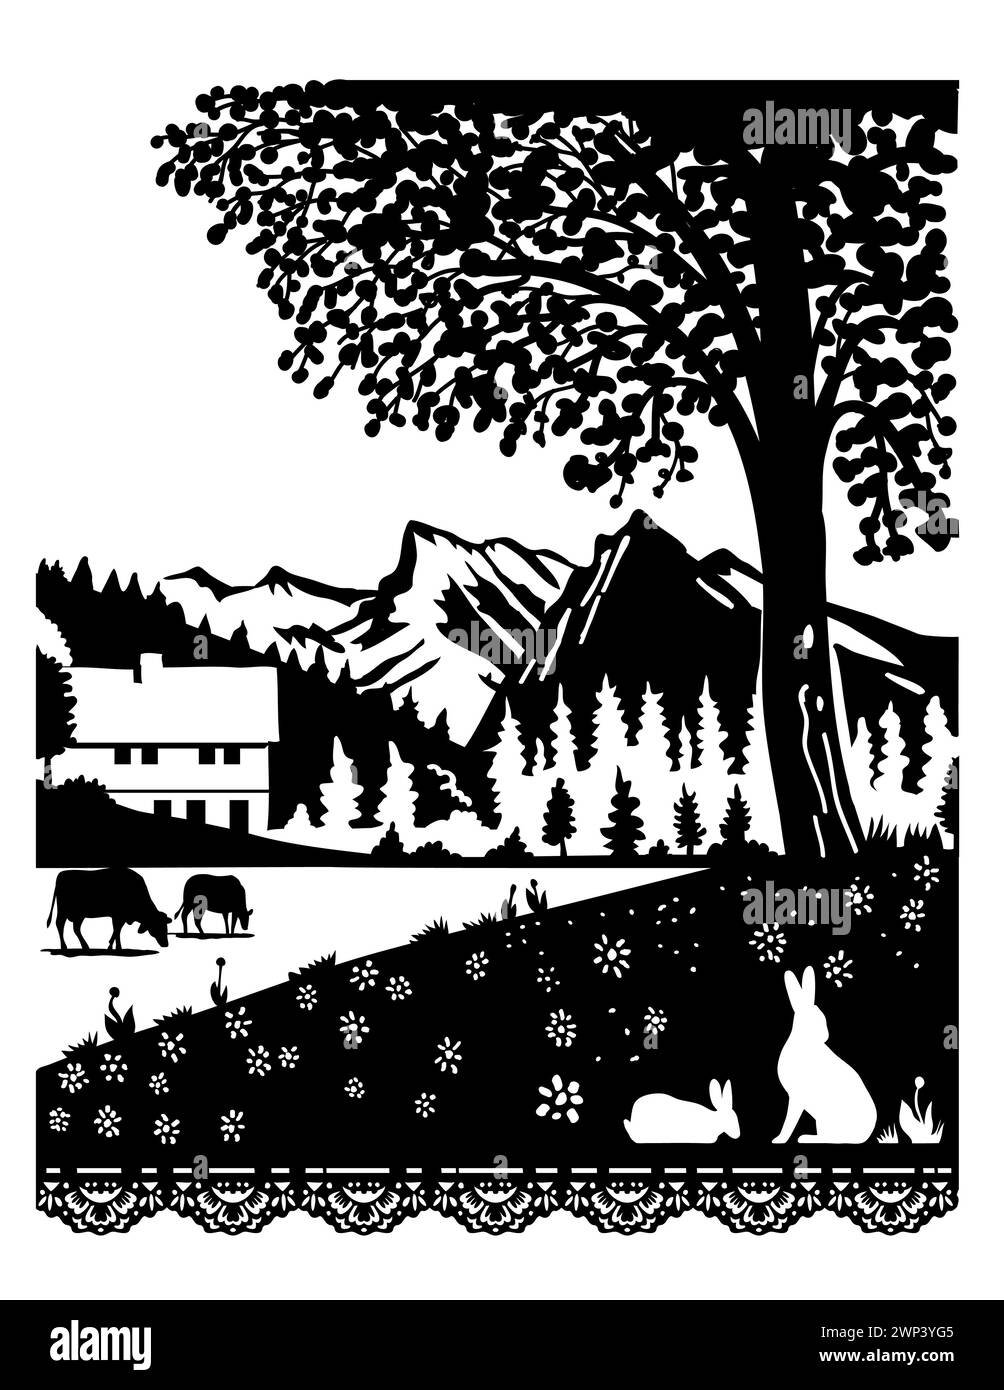 Scherenschnitte suisse ou ciseaux taillé illustration de la silhouette d'une vache et d'un lapin dans un village du Parc naturel de Diemtigtal dans le canton de Berne, SWI Banque D'Images